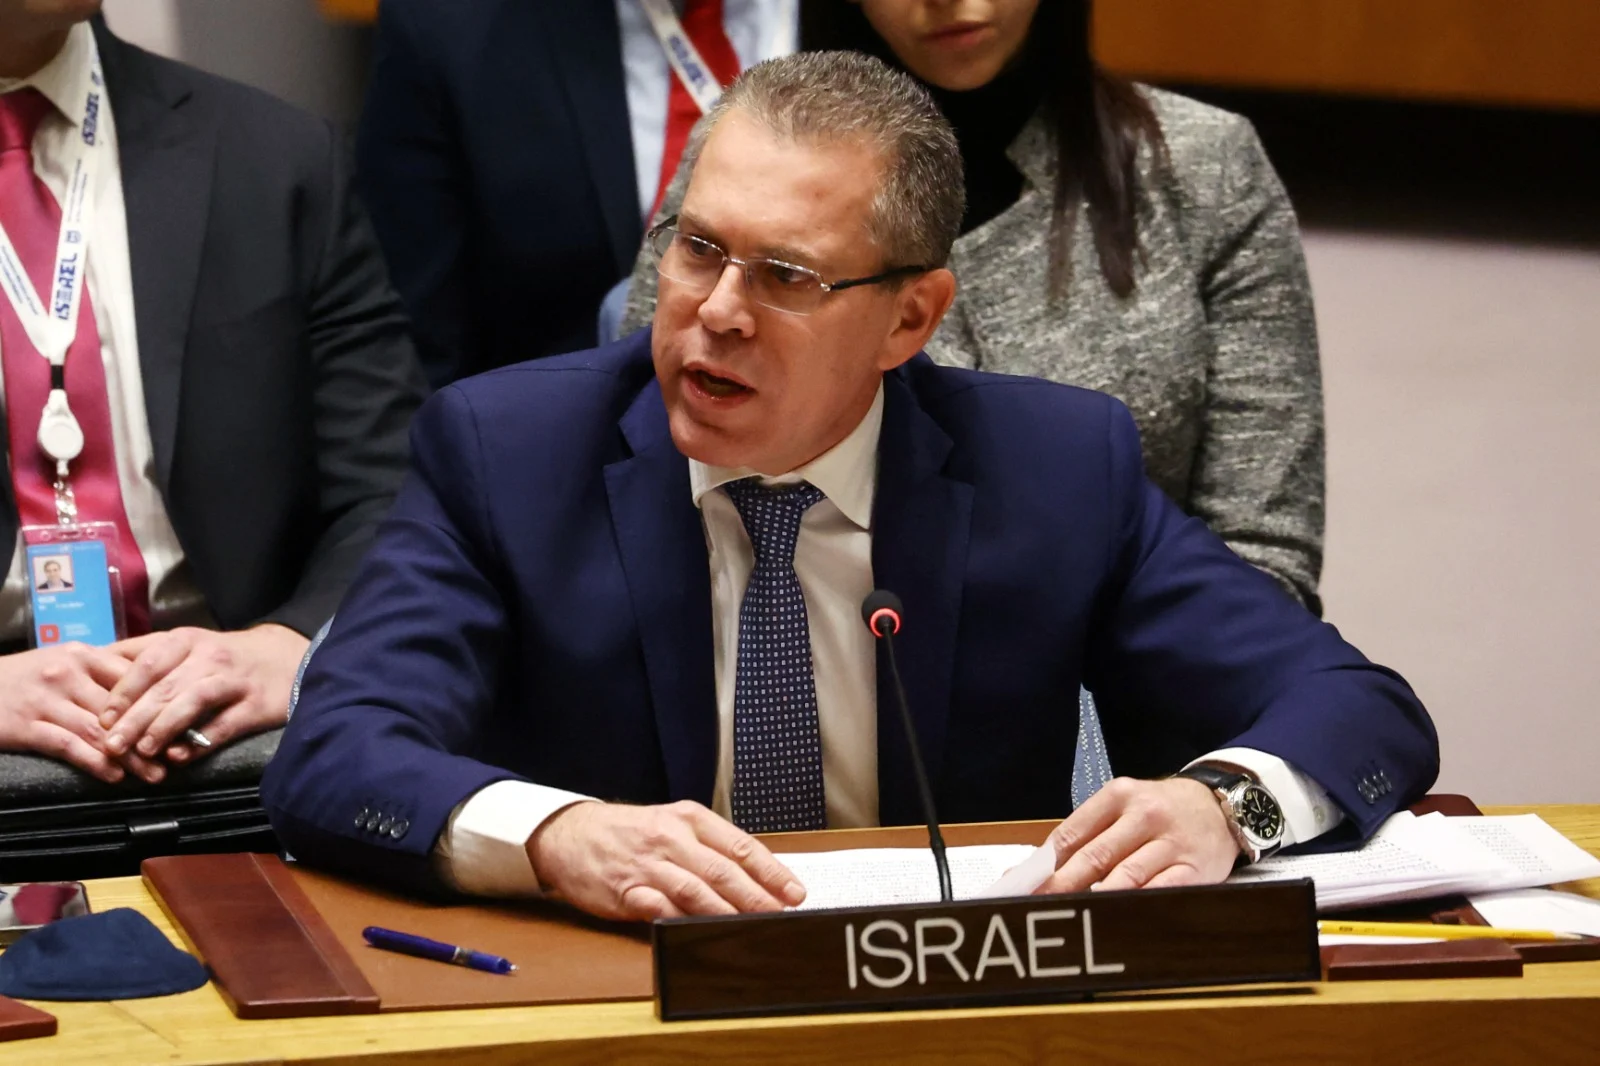 שגריר ישראל באו''ם גלעד ארדן בדיון מועצת הביטחון על הר הבית